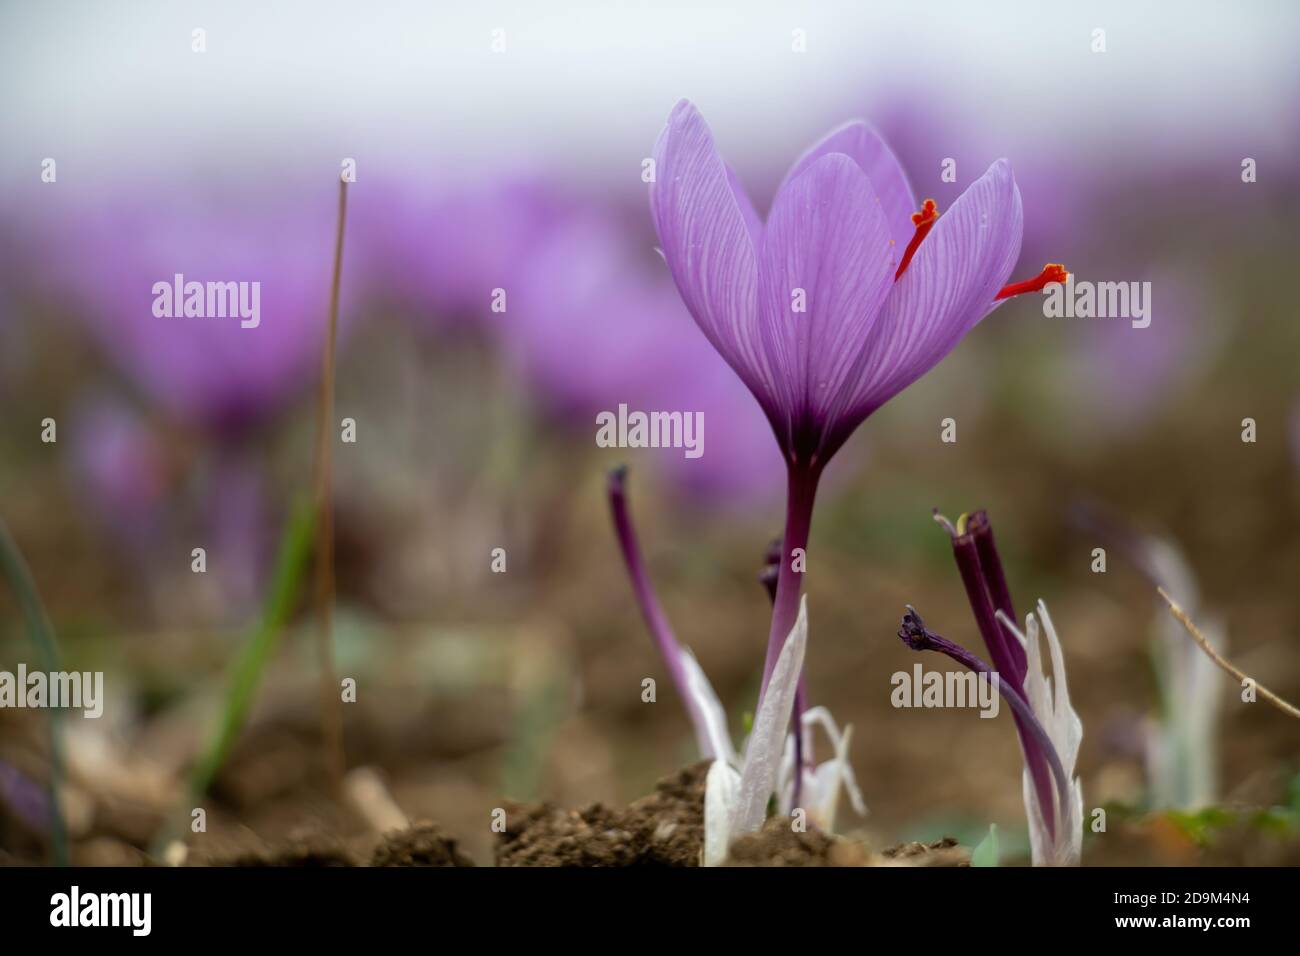 Saffron flowers in the field. Crocus sativus, commonly known as saffron crocus, delicate violet petals plant on ground, closeup view Stock Photo